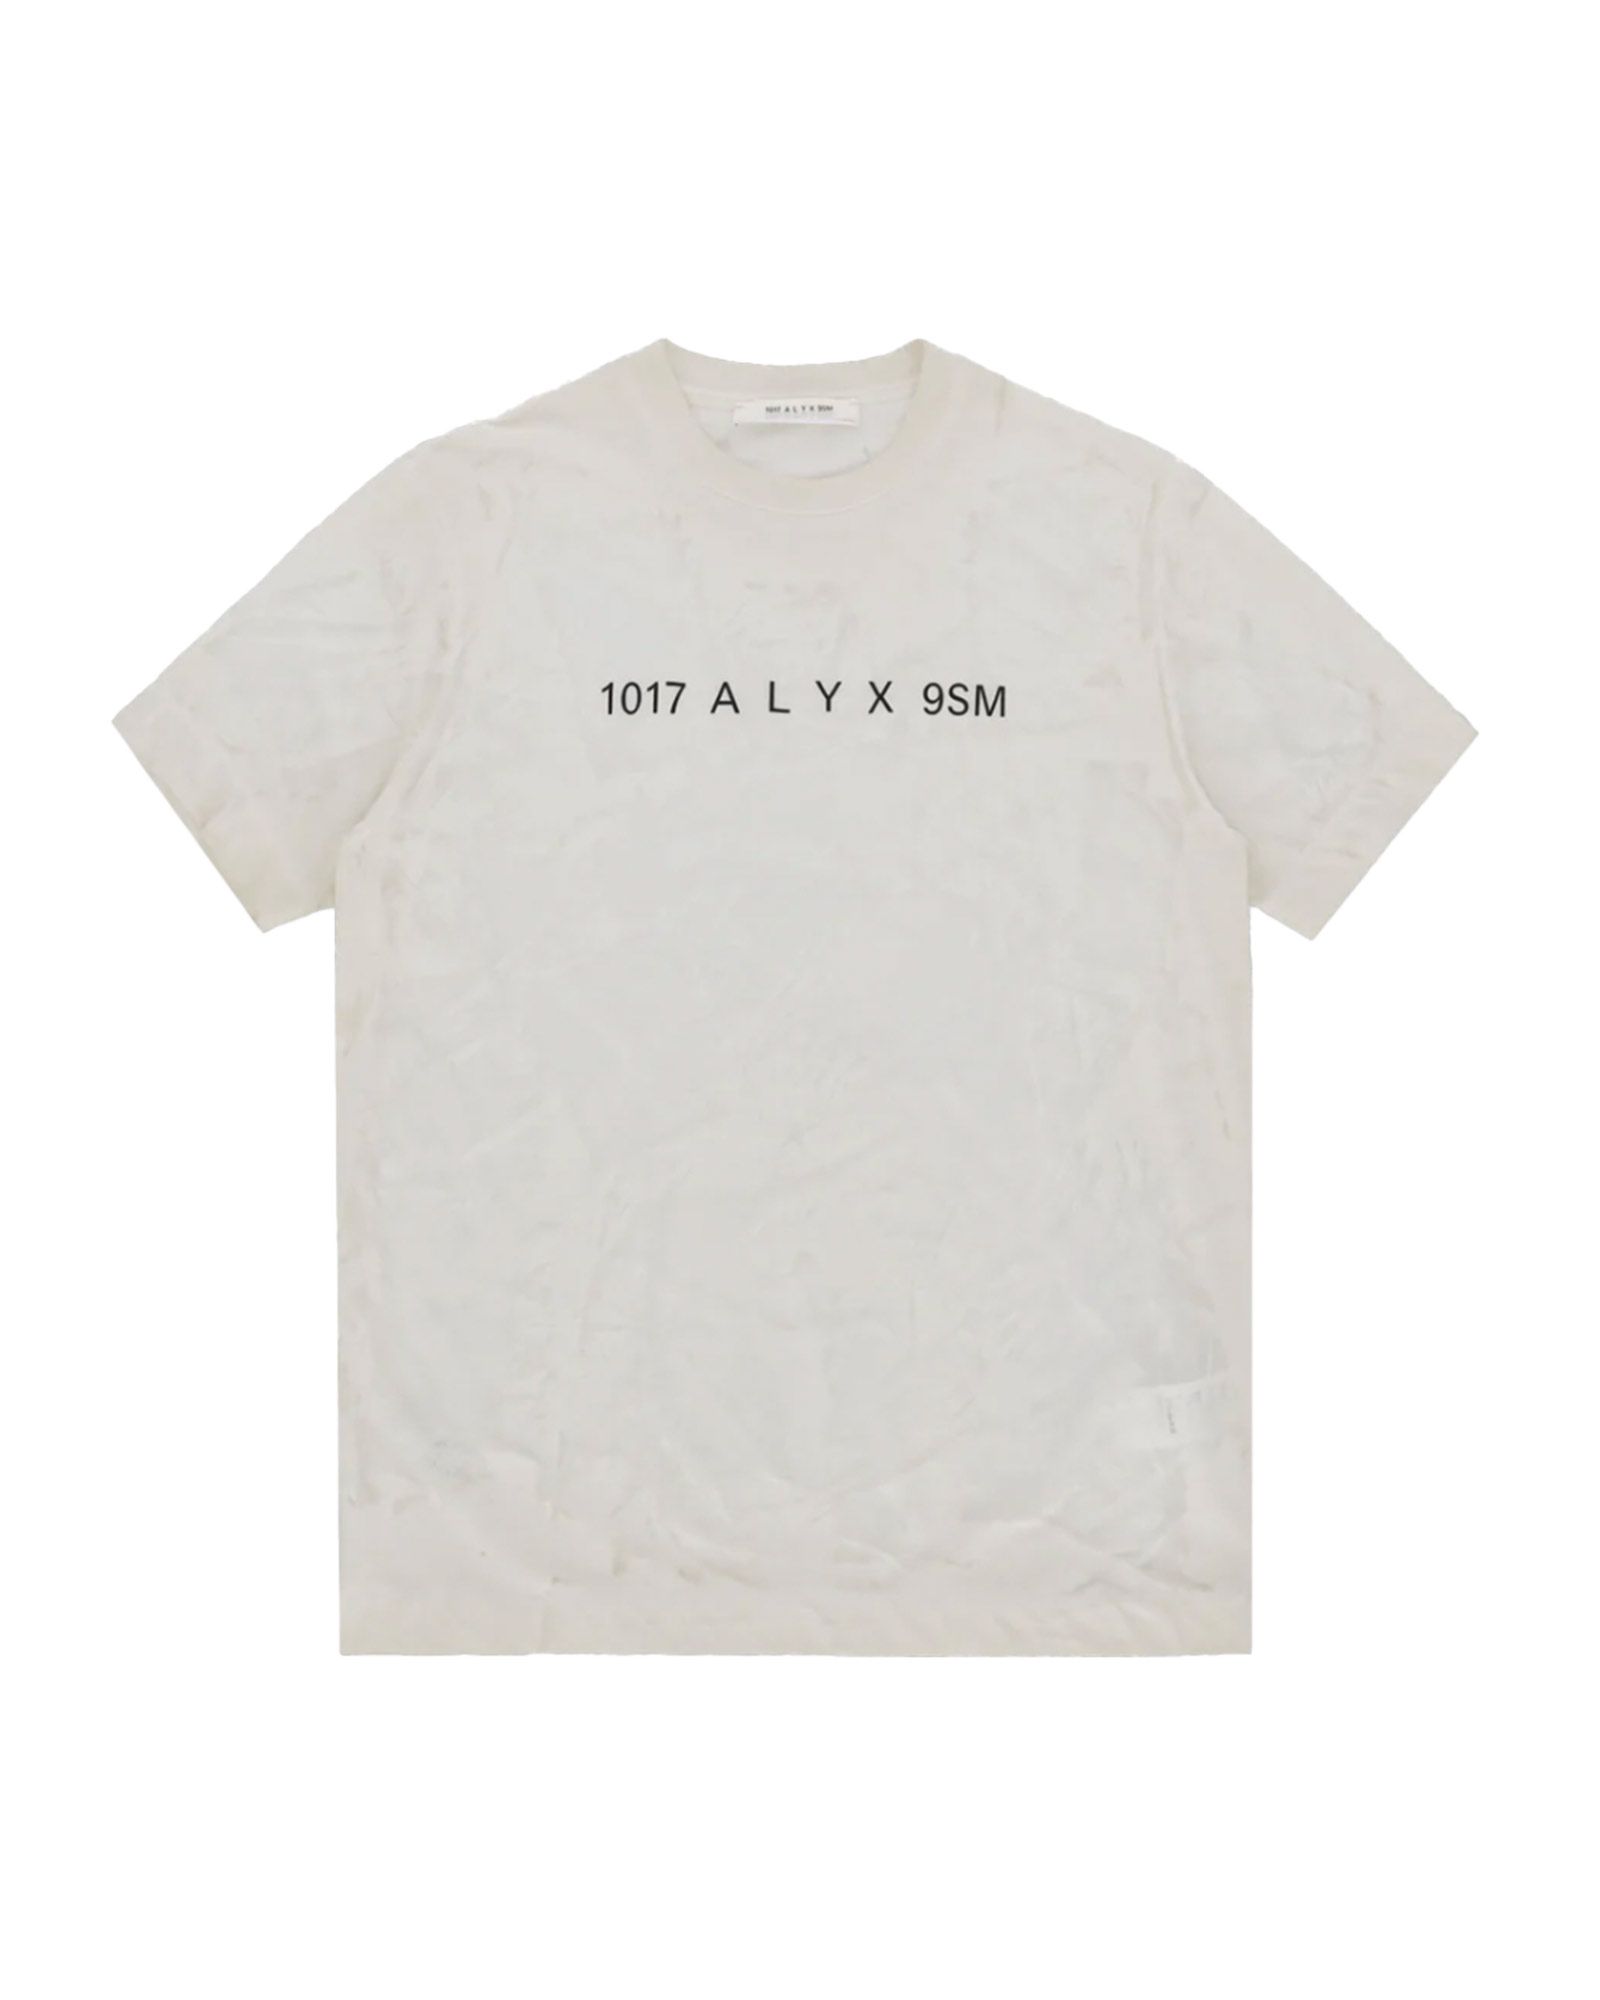 1017 ALYX 9SM - アリクス/TRANSLUCENT GRAPHIC S/S T-SHIRT/Tシャツ